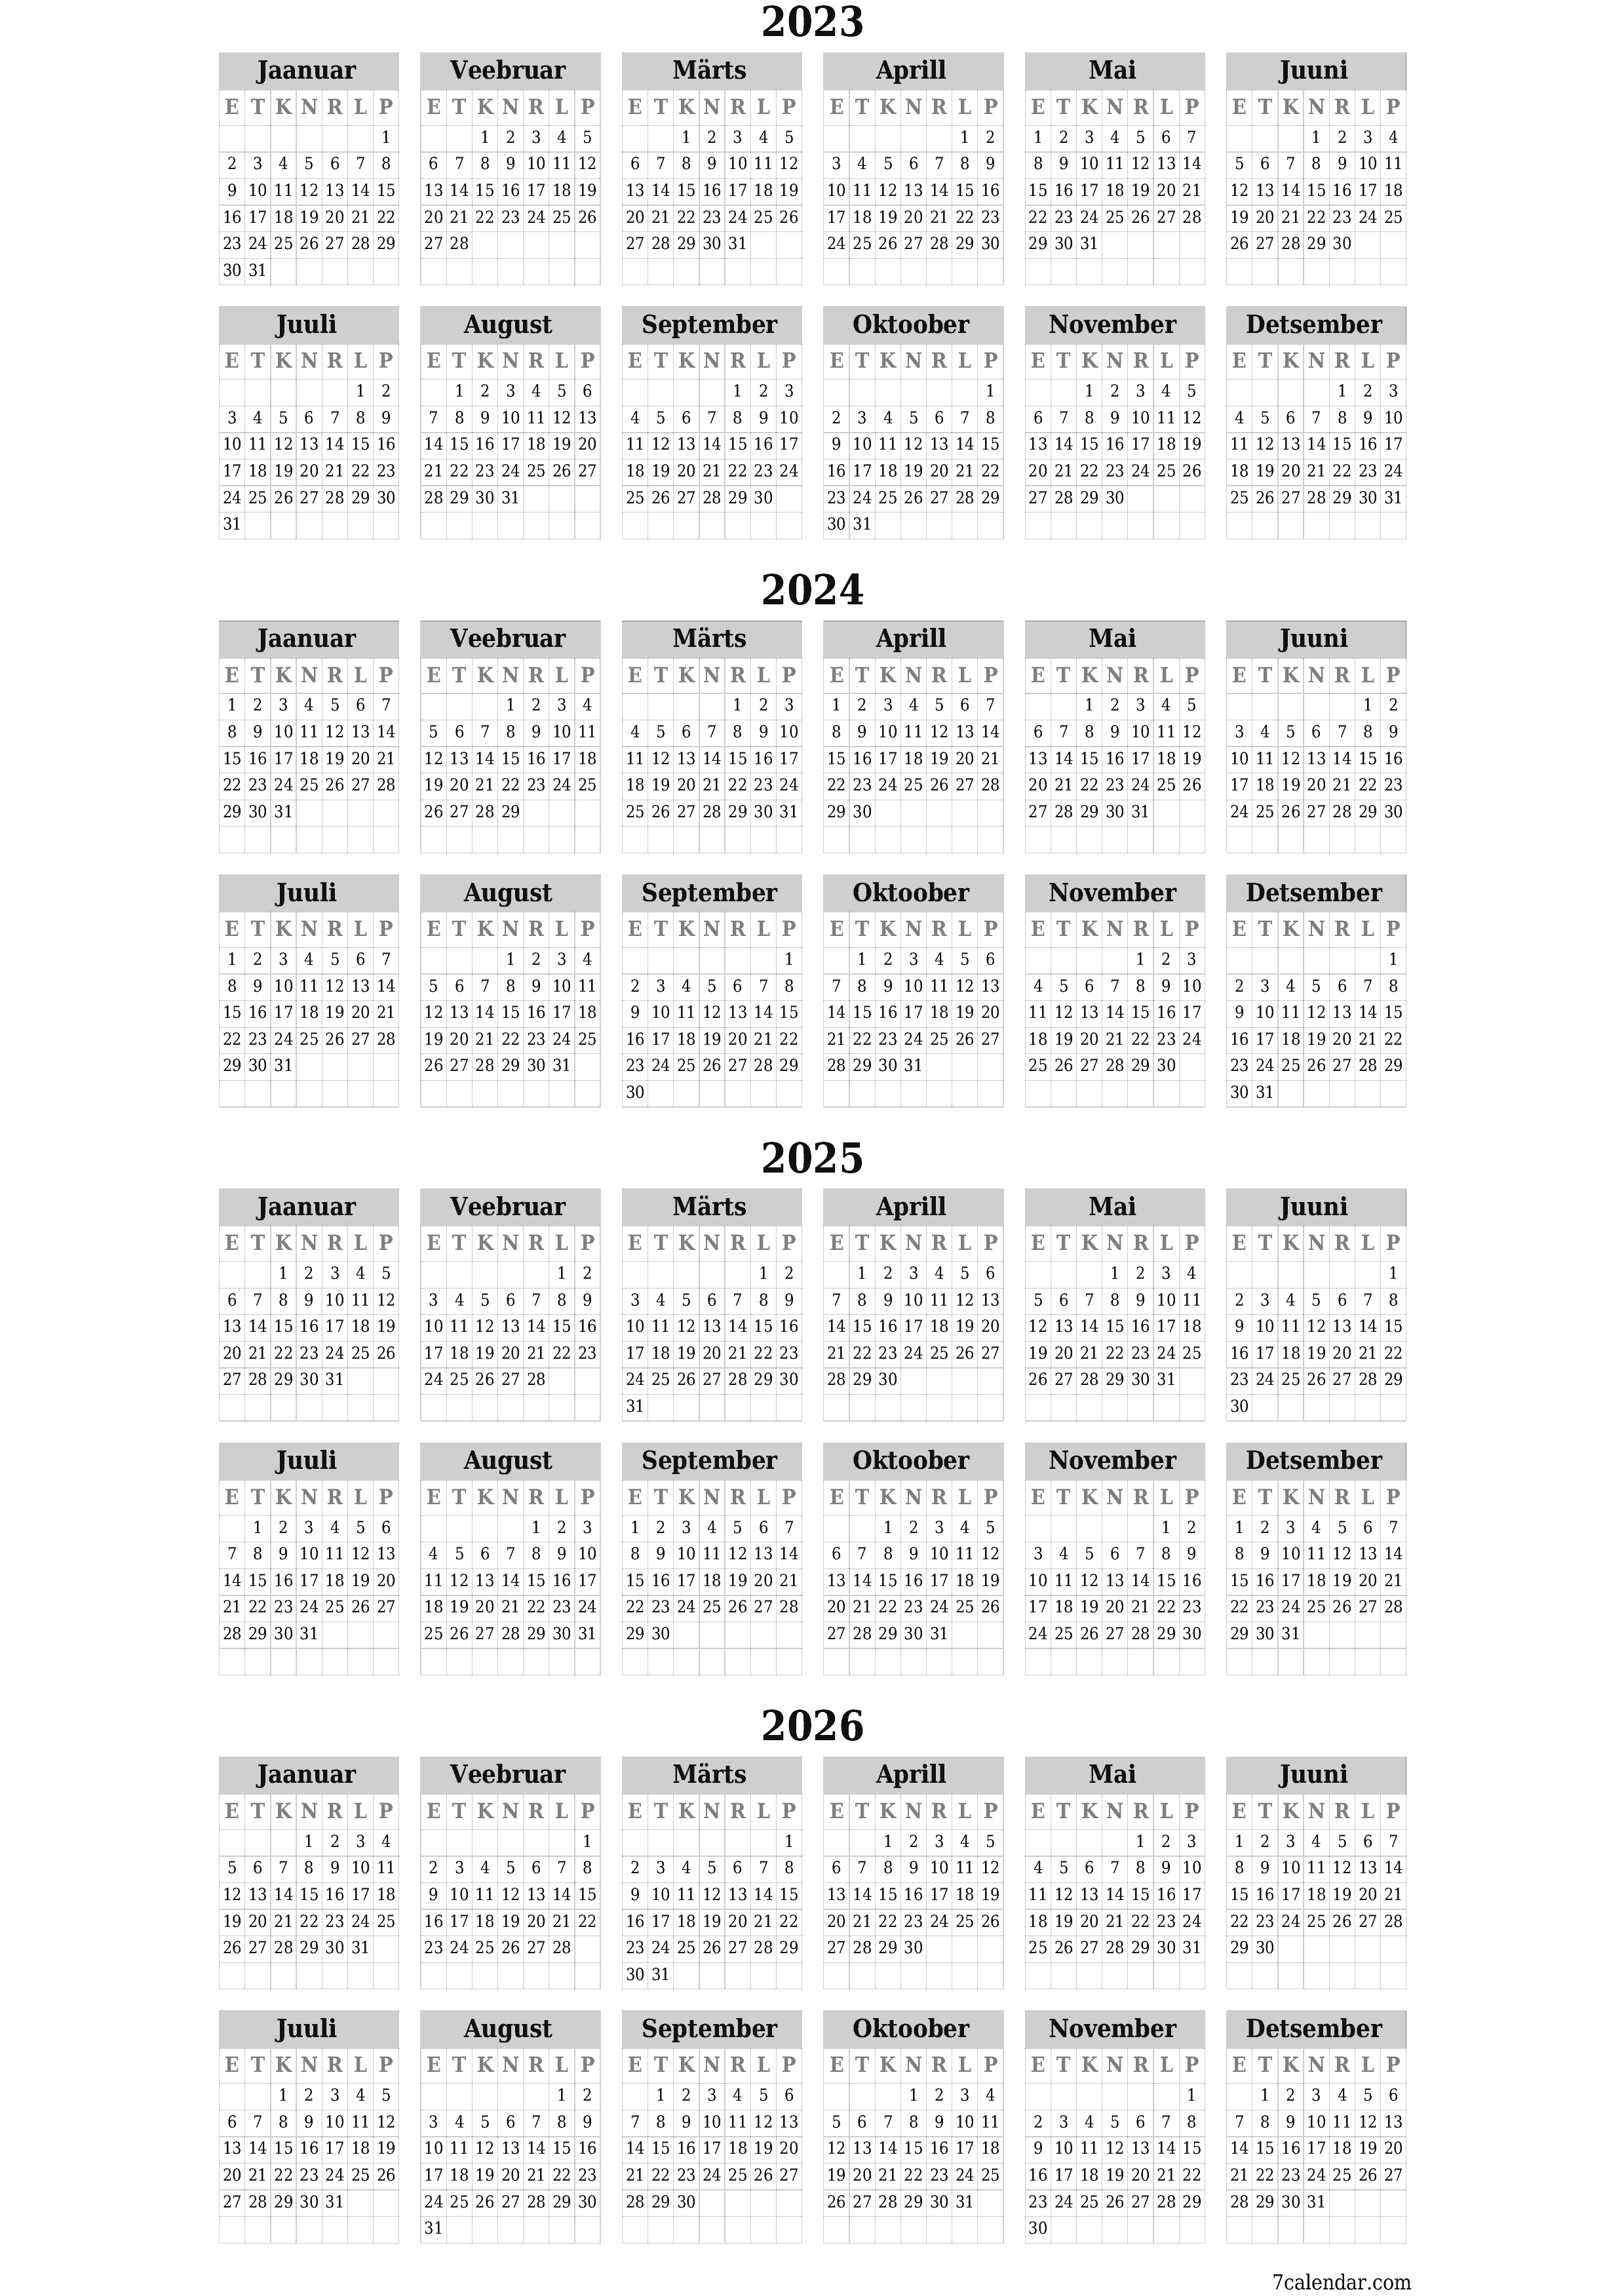 prinditav seina kalendri mall tasuta vertikaalne Iga-aastane kalender September (Sept) 2023